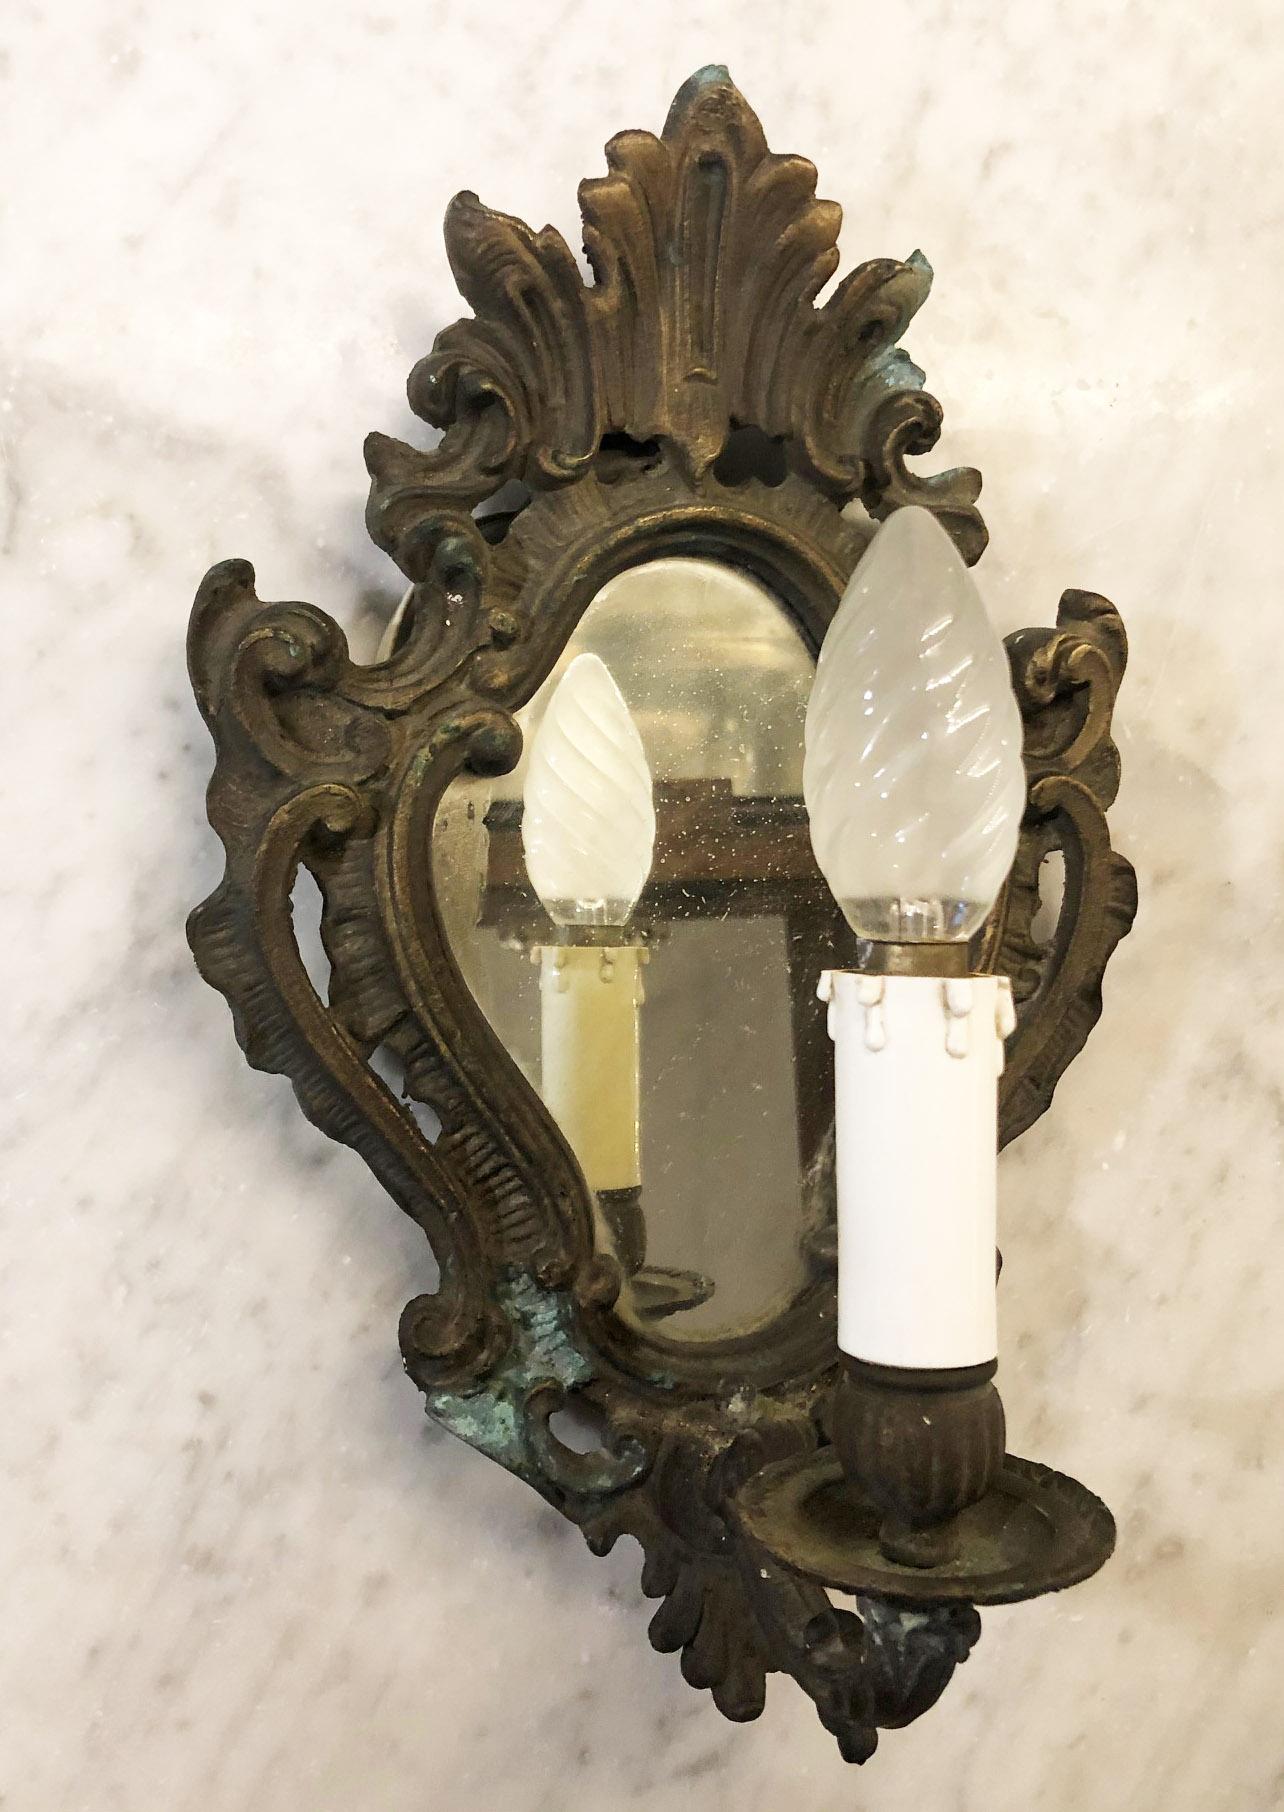 Original lampe murale italienne des années 1940 en bronze avec un vieux miroir.
En état de marche.
Doté d'un câblage européen d'origine du 20e siècle.
Nous recommandons à l'acheteur de consulter un électricien expérimenté pour une installation